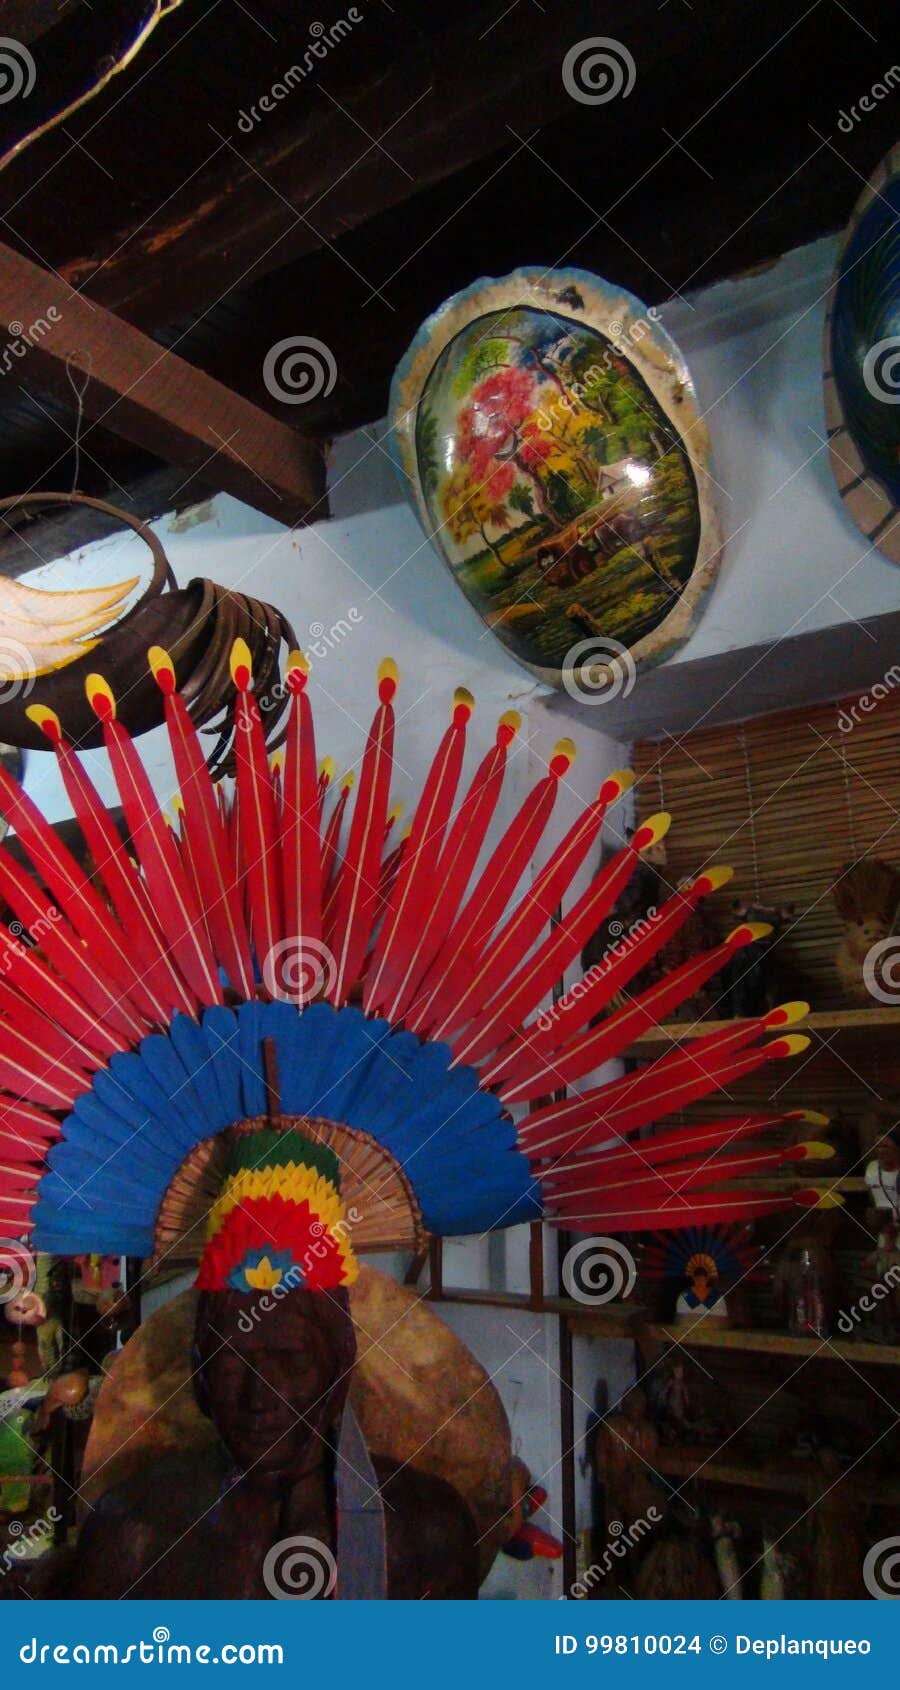 crafts in bolivia, south america.